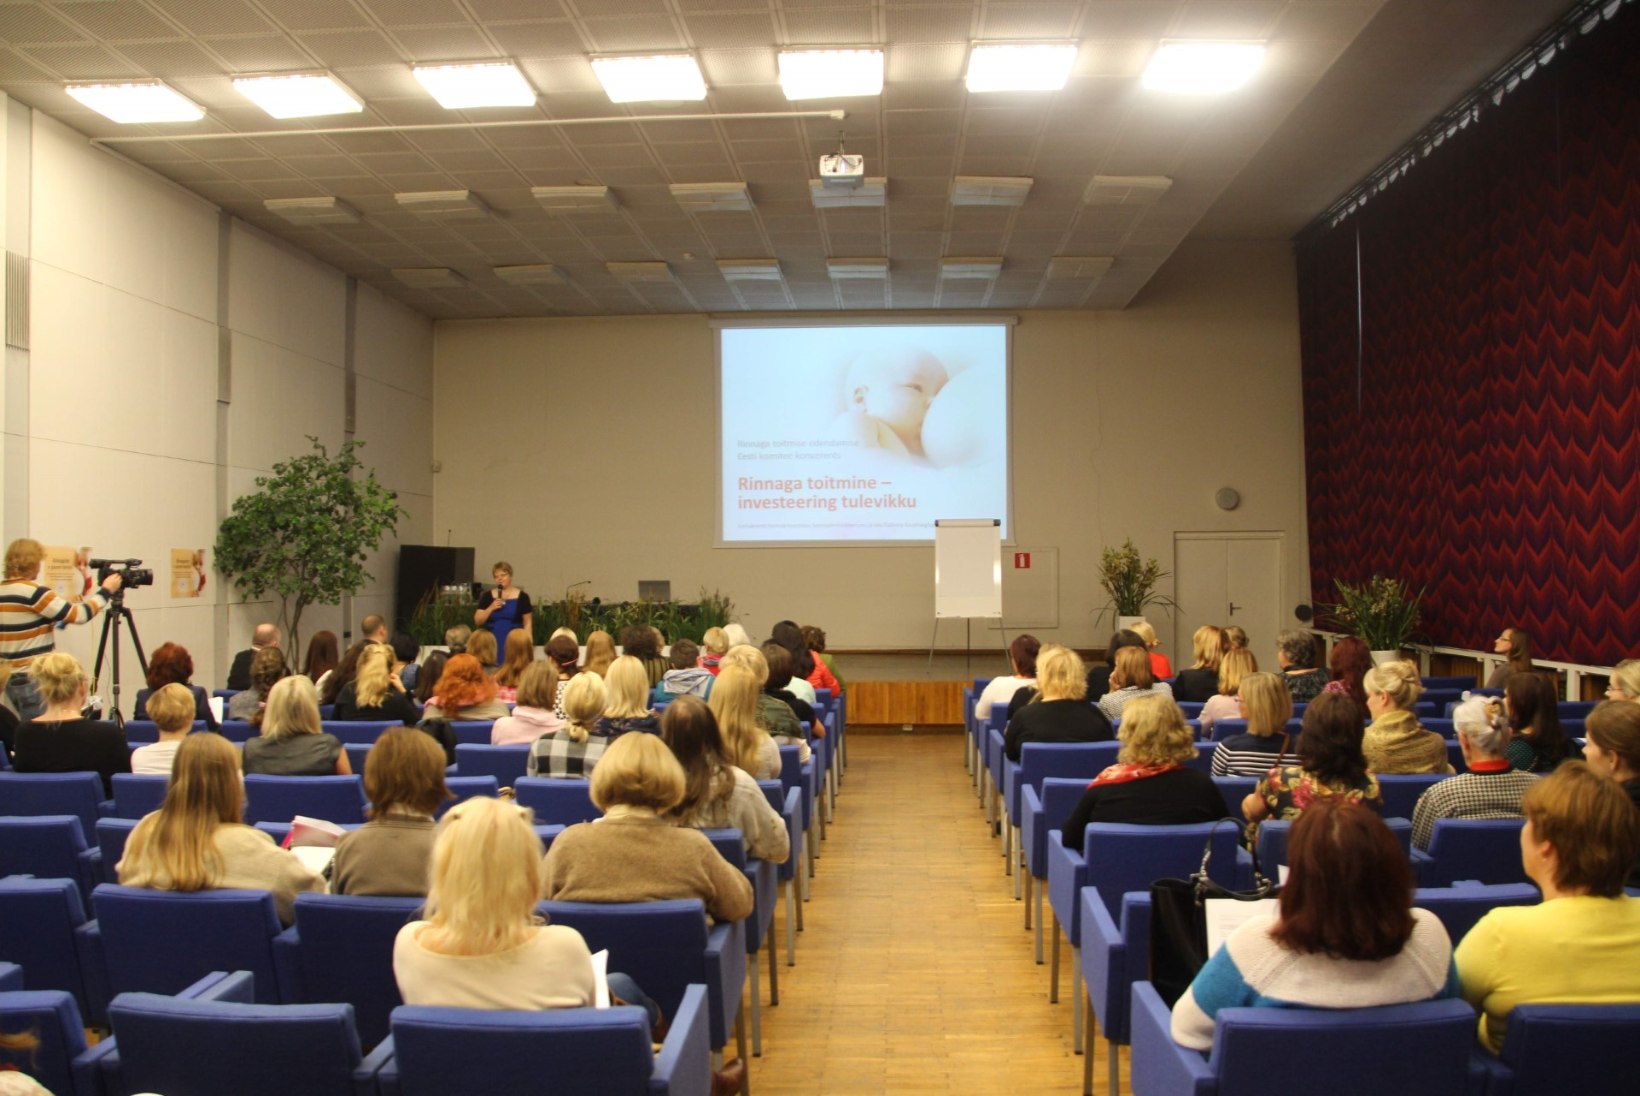 Tallinnas peetakse rinnaga toitmisele pühendatud konverentsi